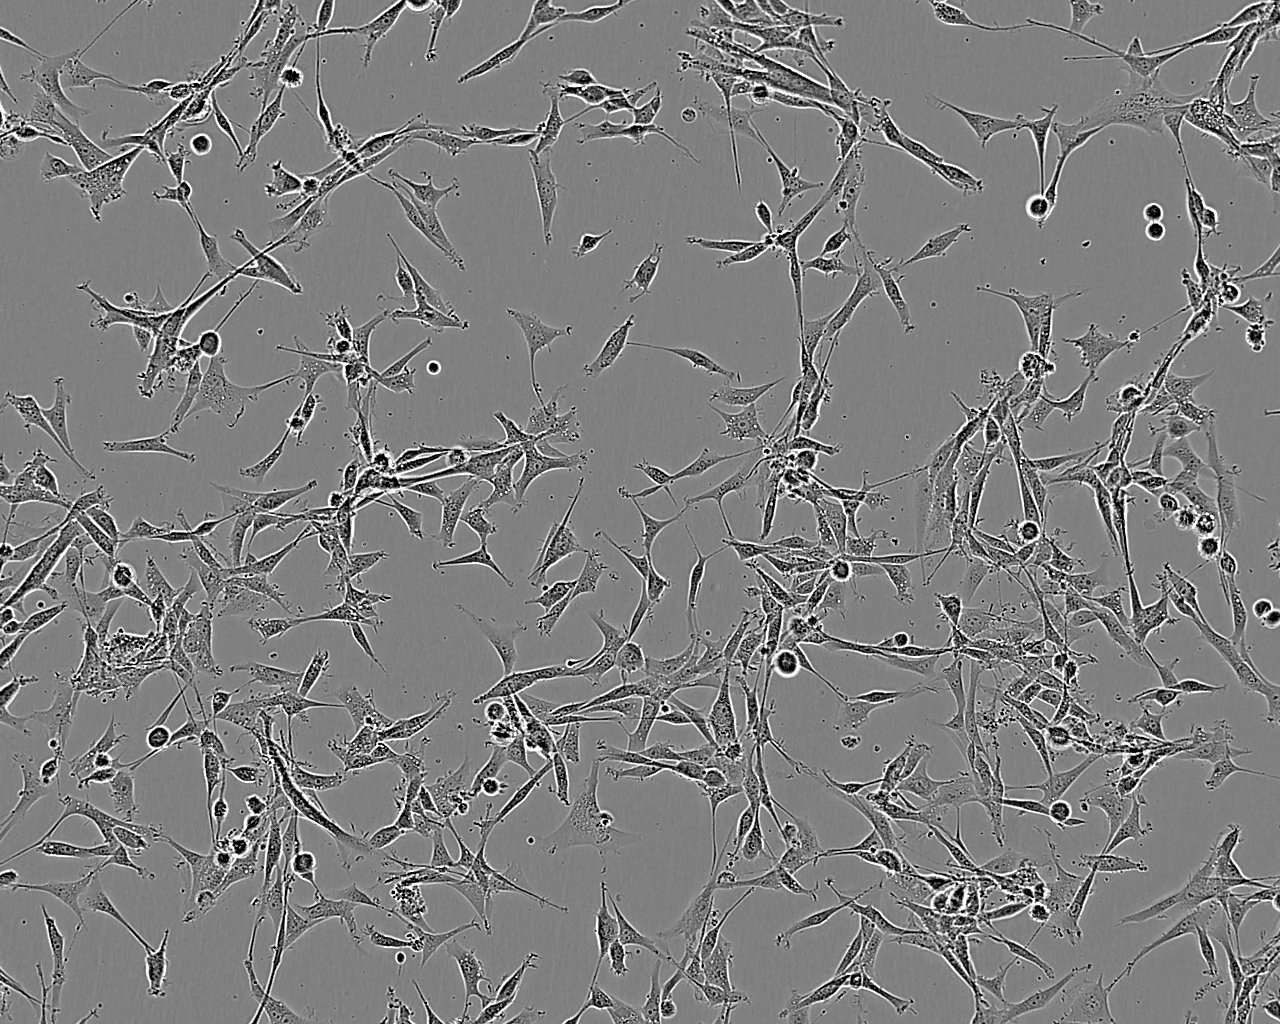 GL261 epithelioid cells小鼠胶质瘤细胞系,GL261 epithelioid cells